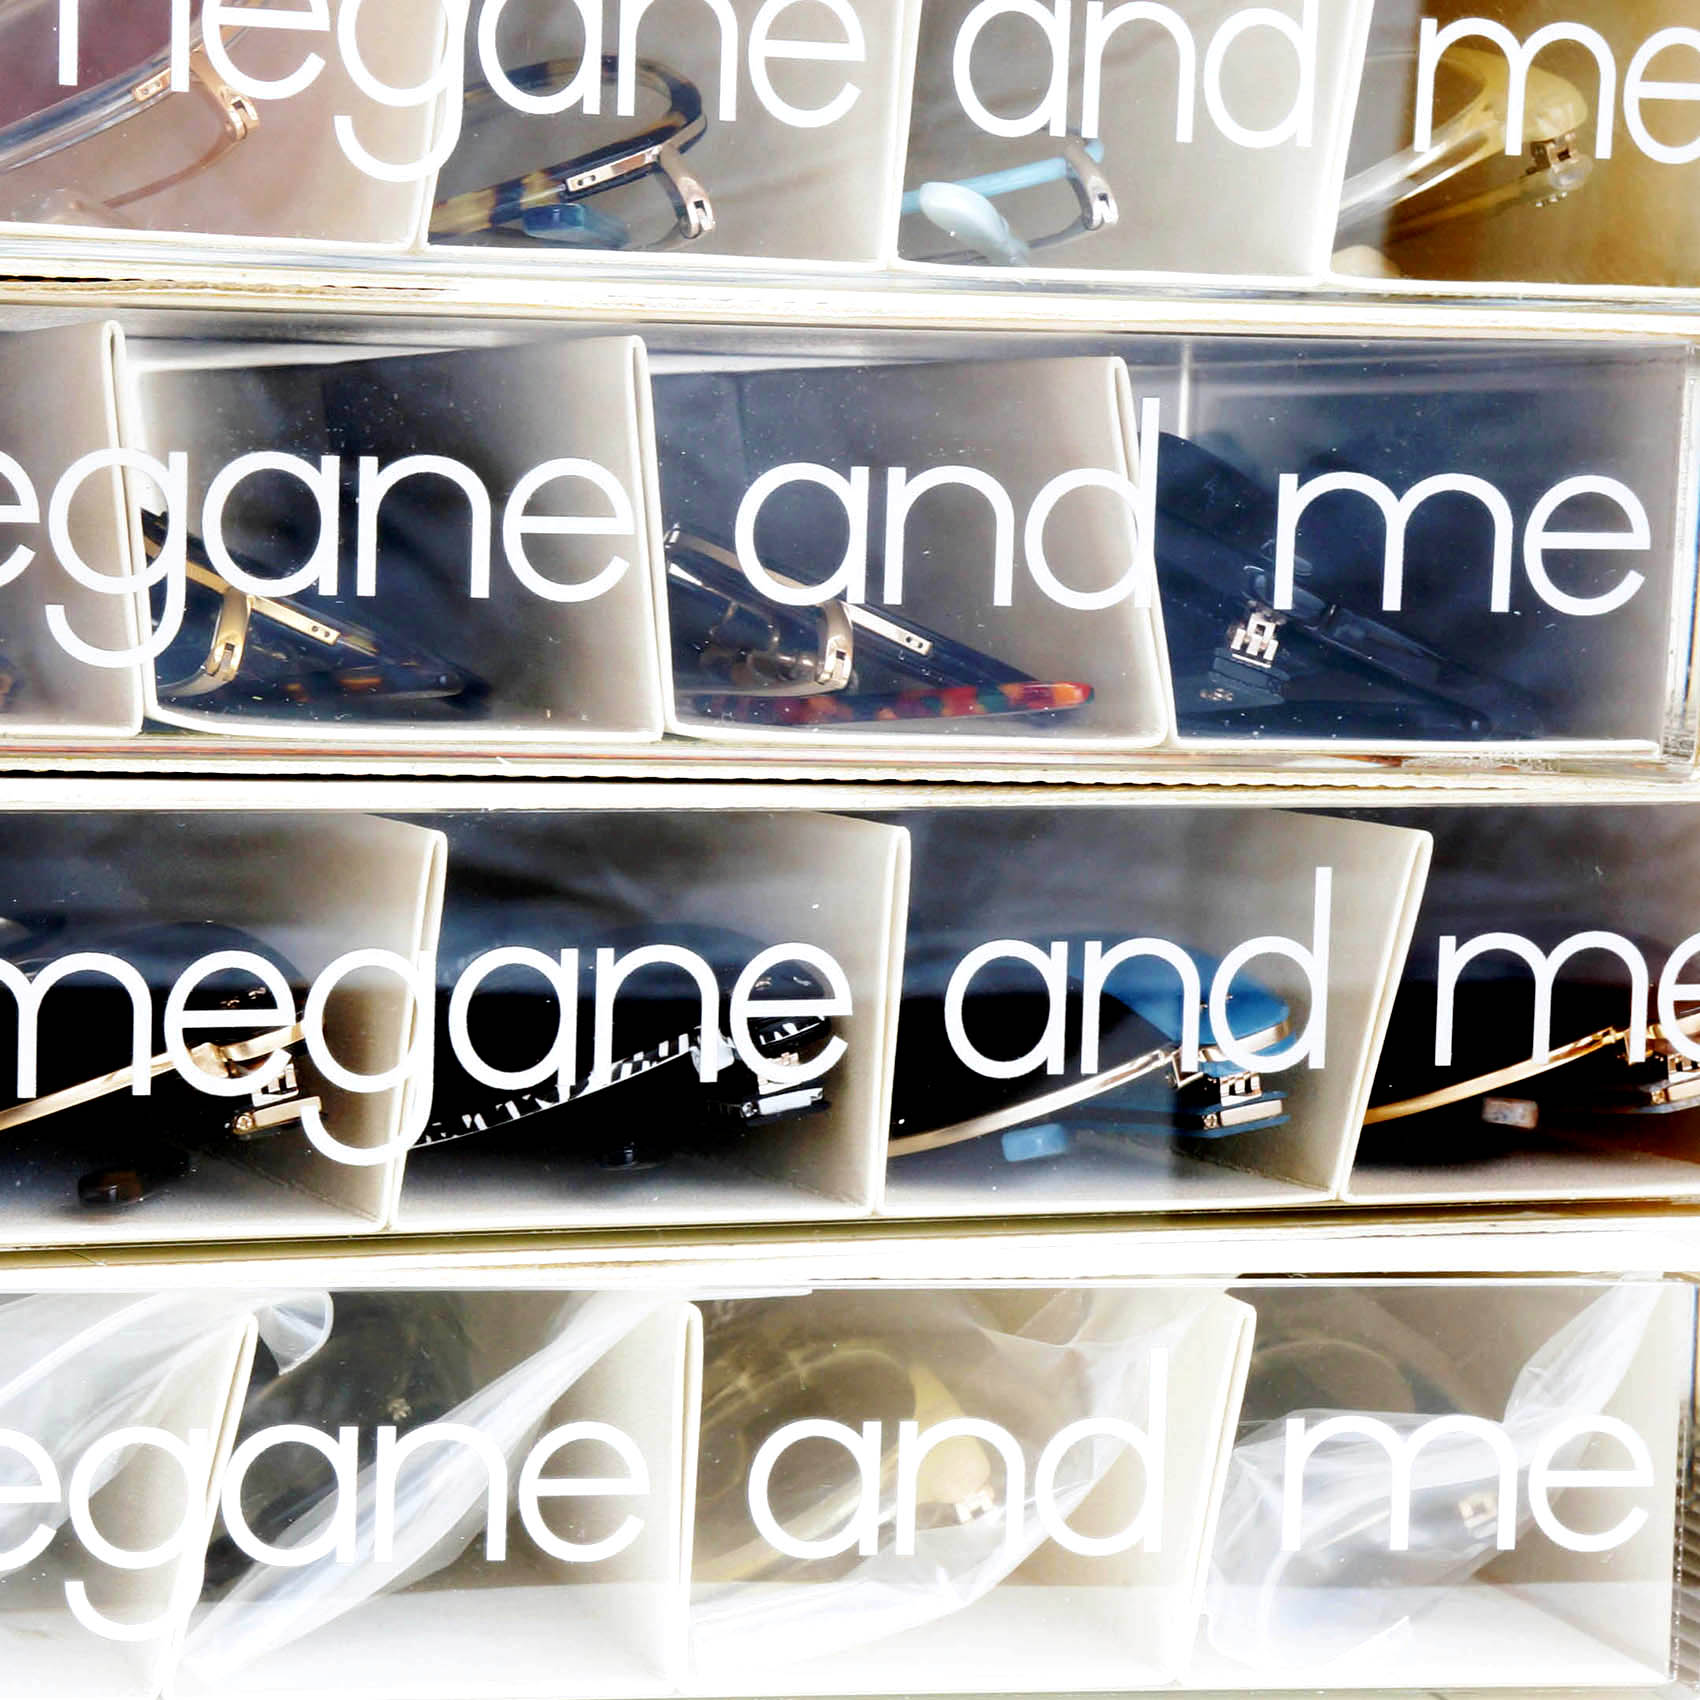 meganeandme-fair-02